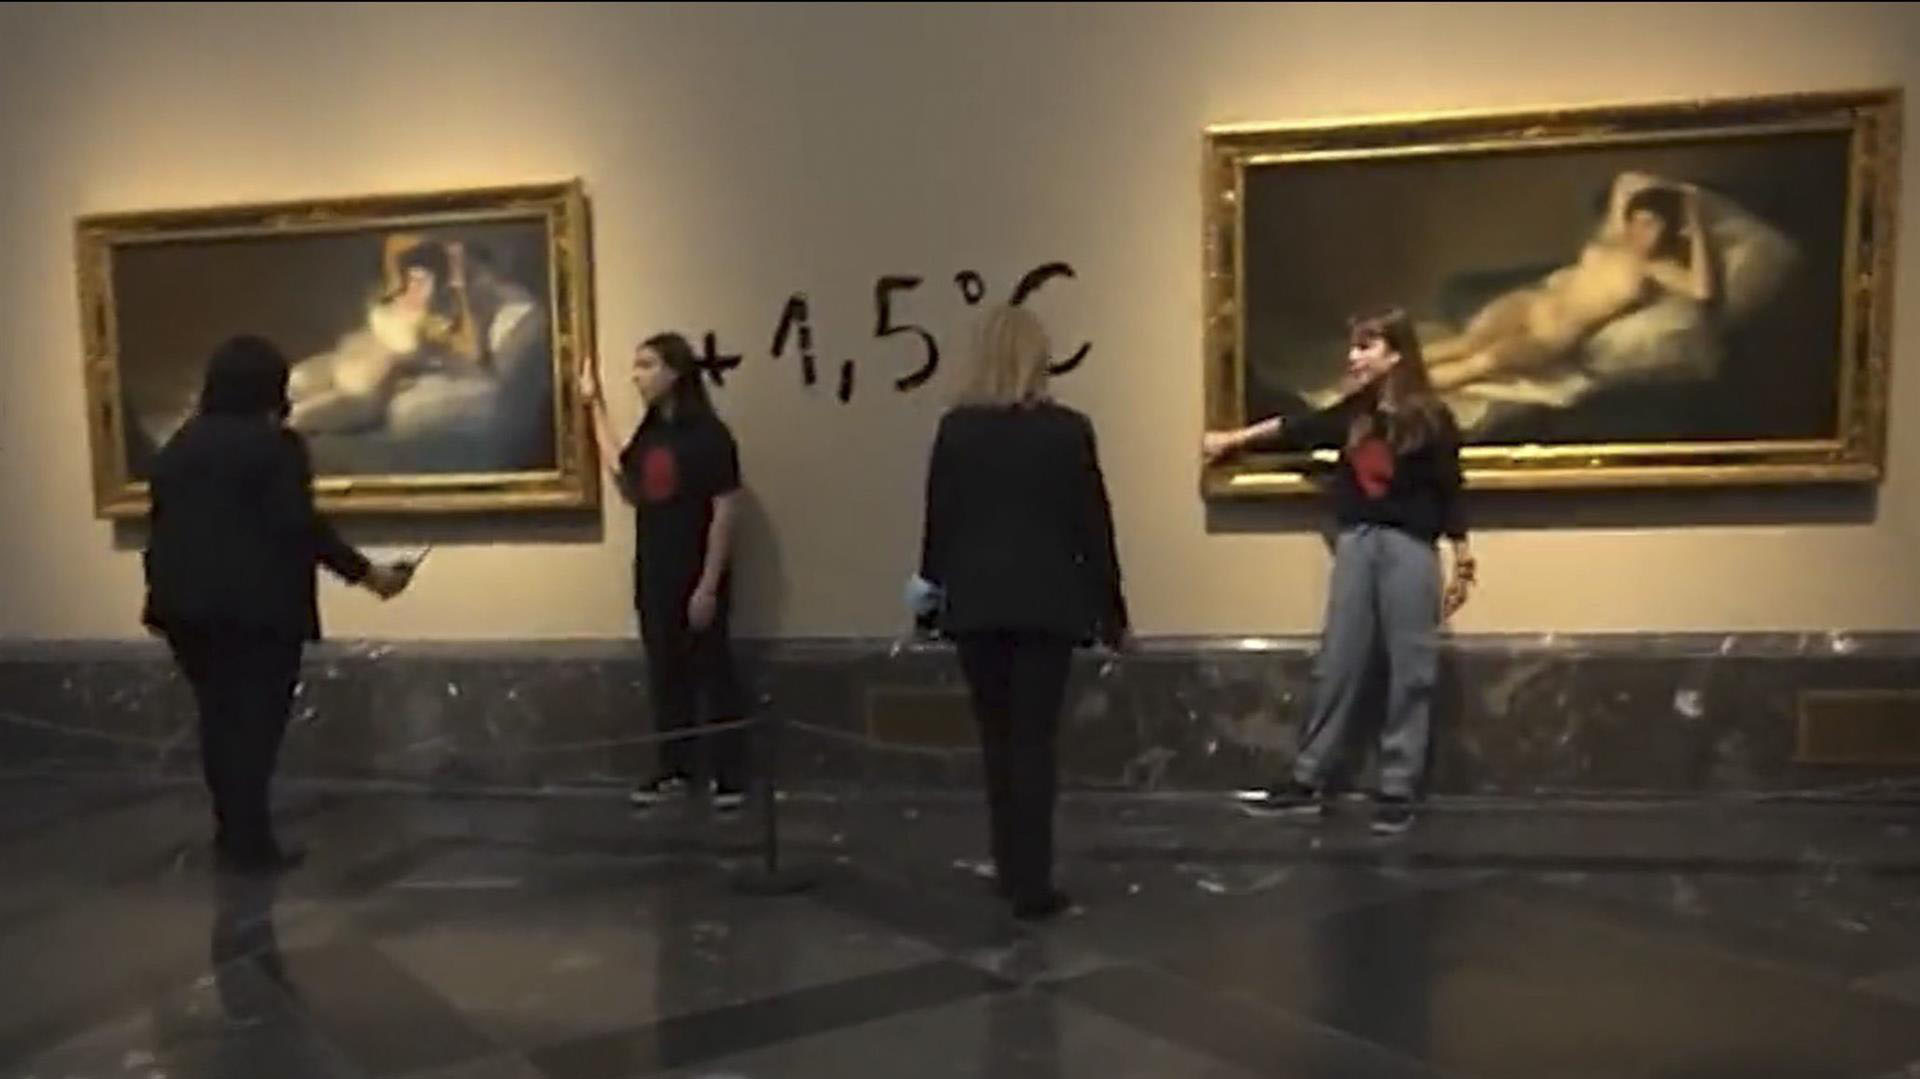 Activistas atacaron obras de Goya en el Museo del Prado - Infobae